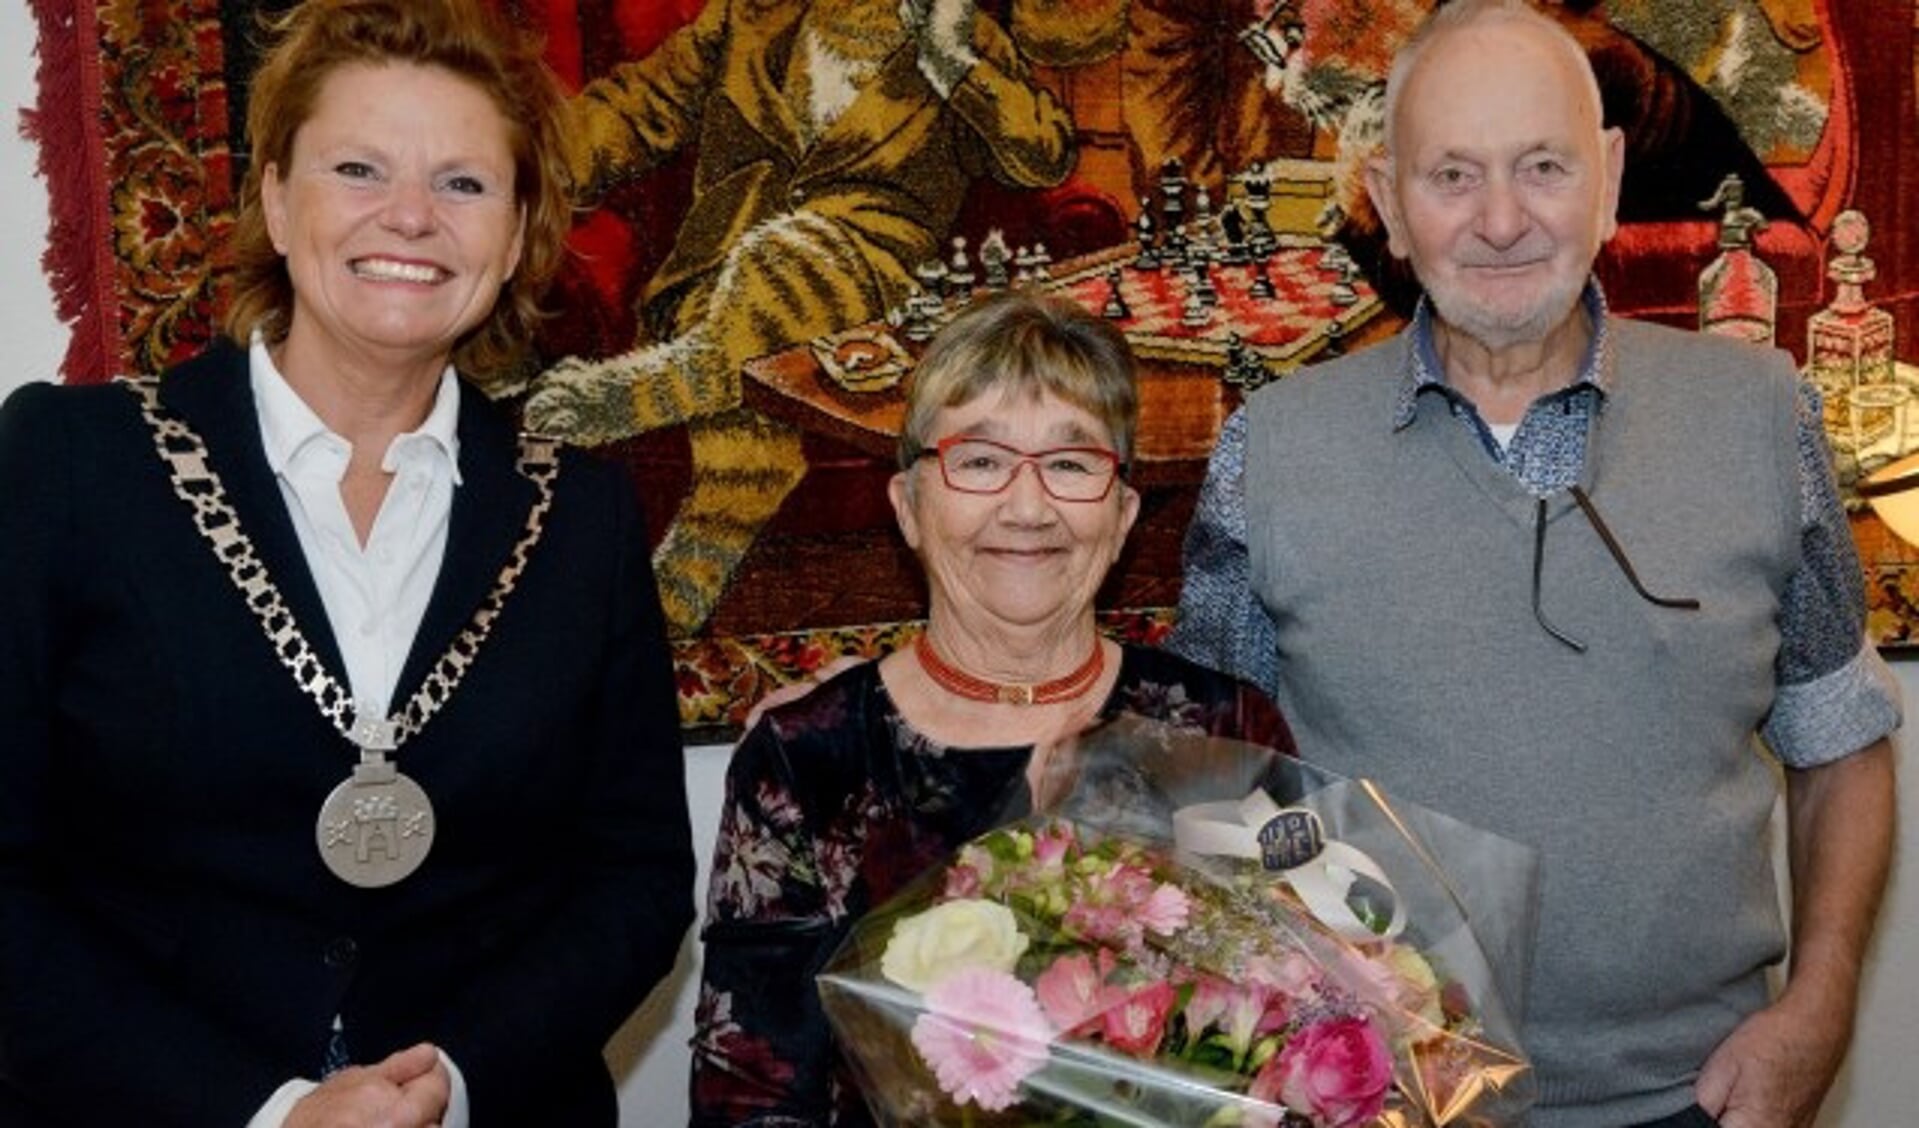 Burgemeester Petra van Hartskamp kwam vorige week donderdag in de Antoniushof het gouden bruidspaar Ans en Arie Buis - Bon haar felicitaties overbrengen. (Foto: Paul van den Dungen)